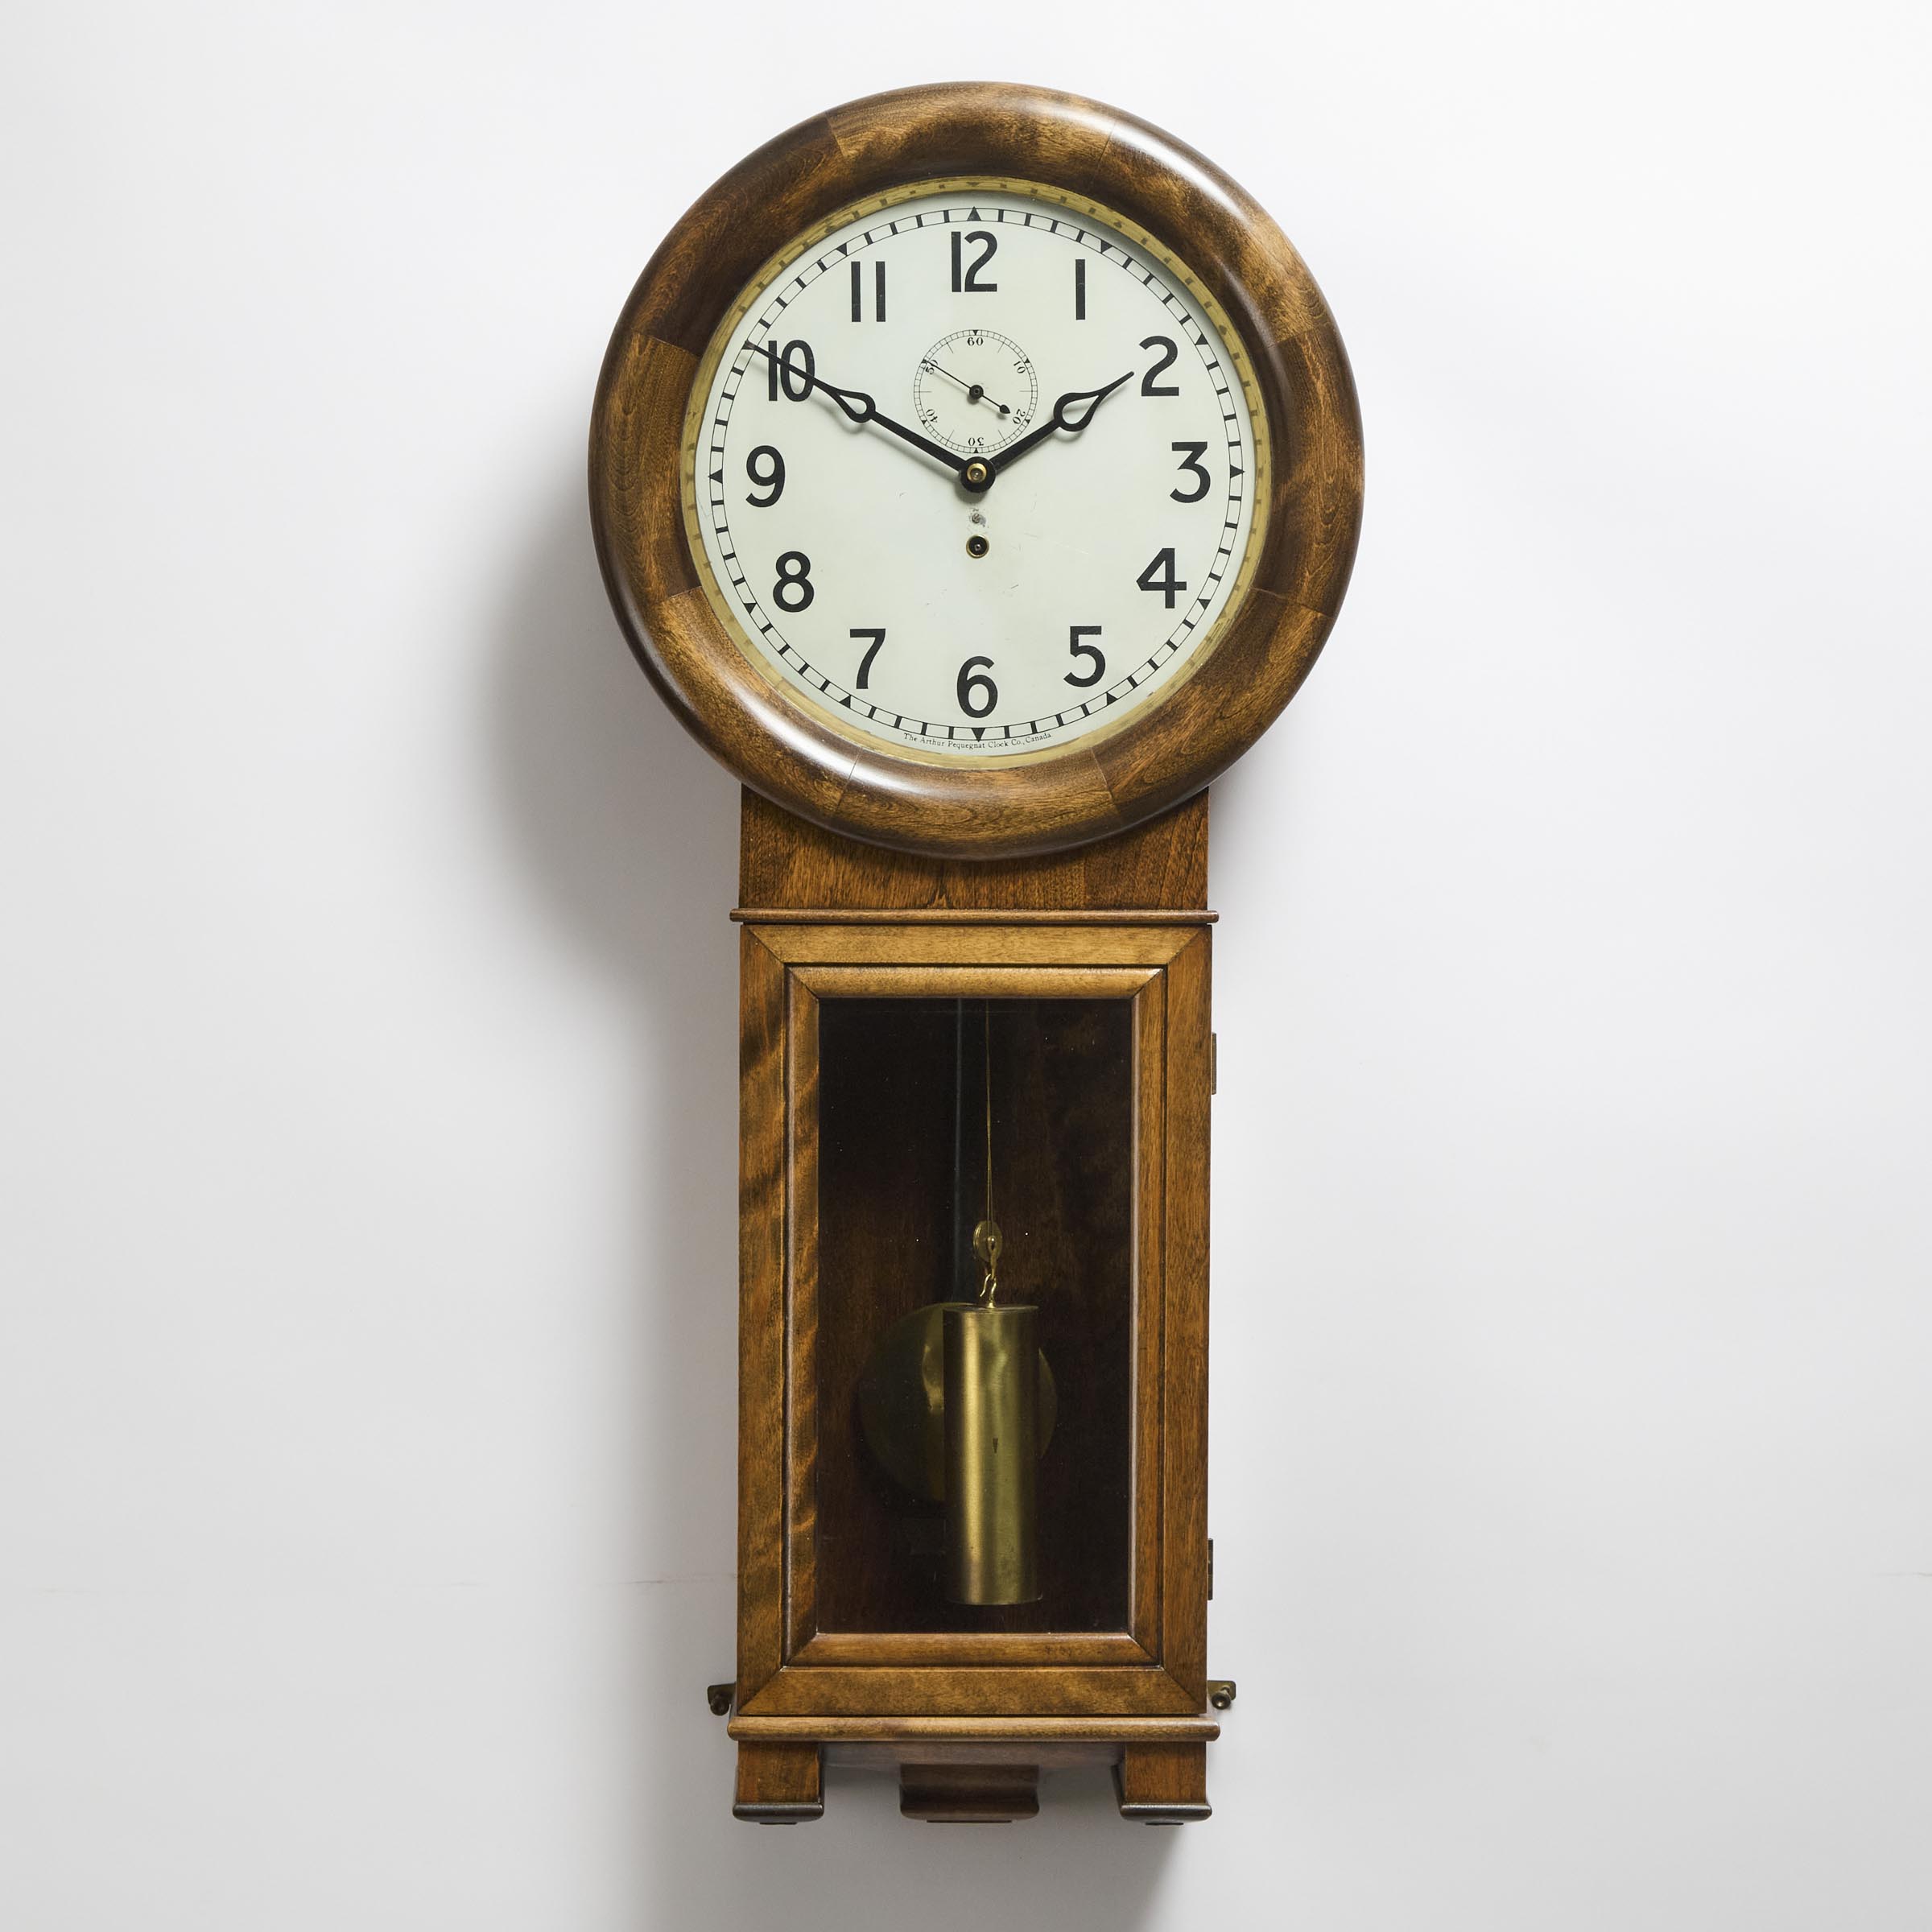 Arthur Pequegnat Clock Co Regulator 2fb0b18